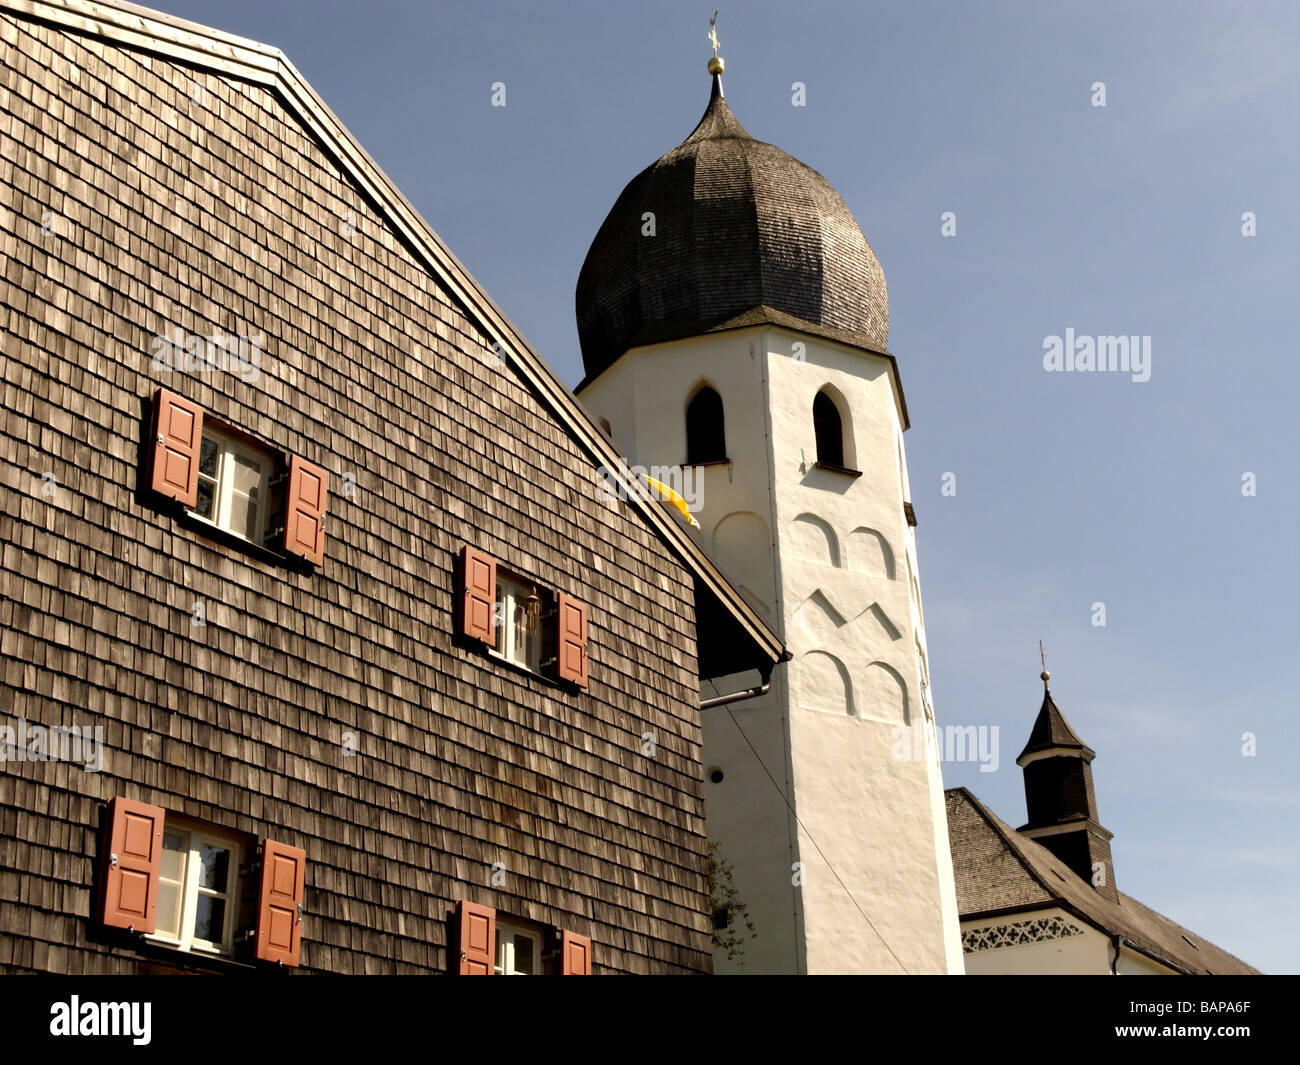 Schindel Wand Aufbau Kirche Turm mit Uhr, Glockenturm, das Benediktiner-Kloster Frauenwoerth, Fraueninsel Insel, Stockfoto